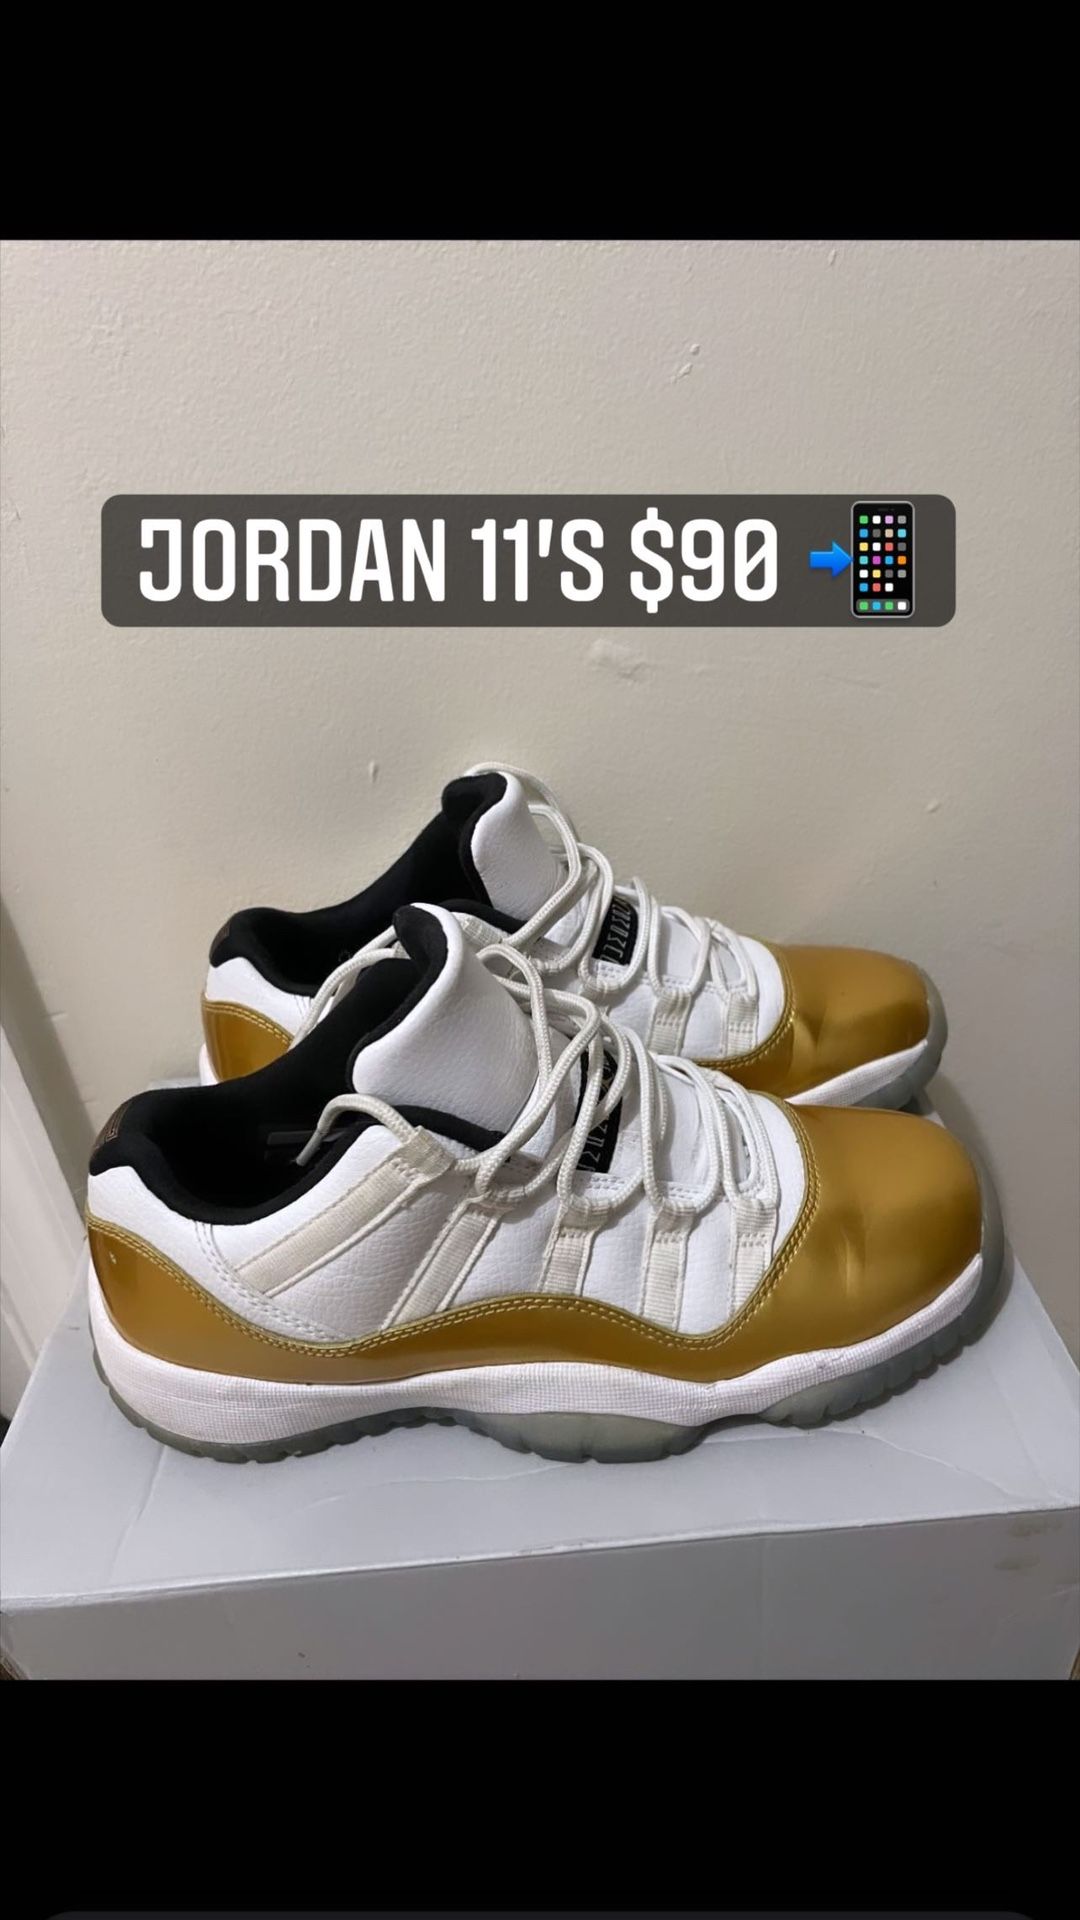 Jordan 11’s